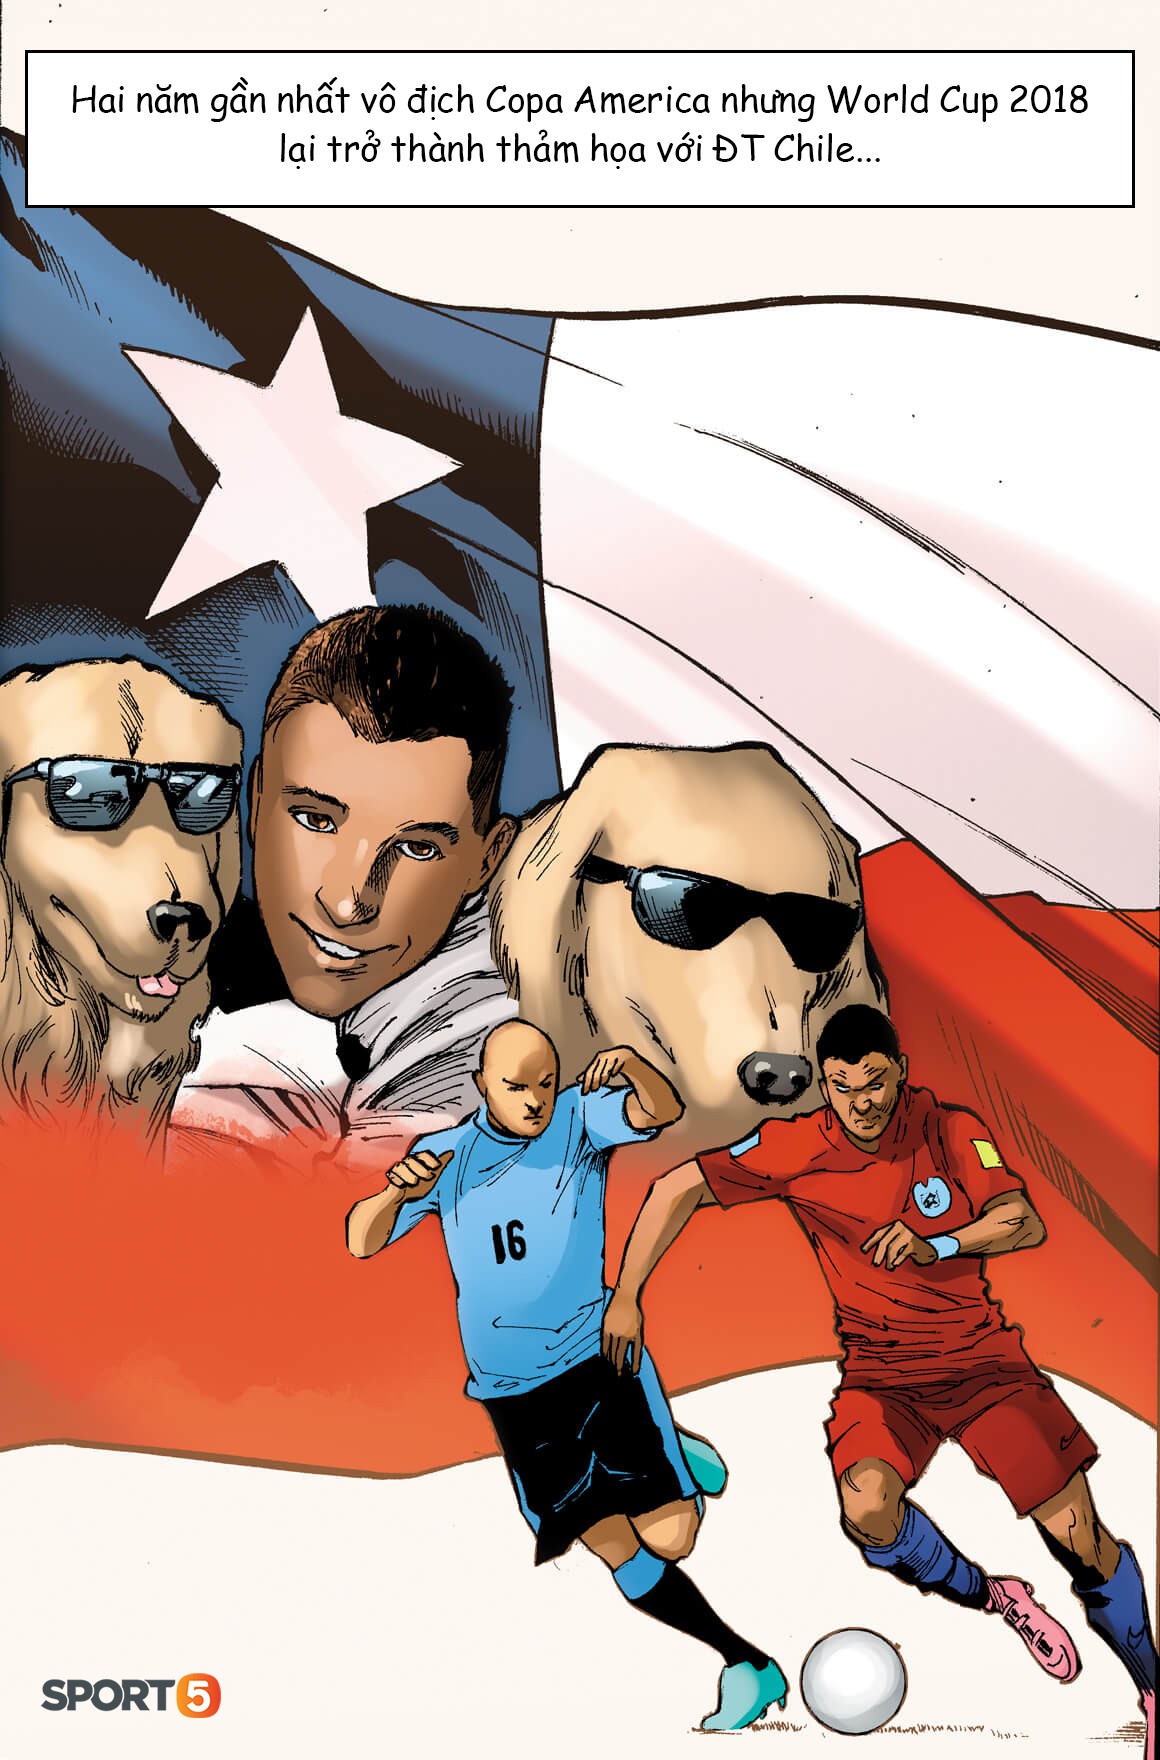 Truyện World Cup phong cách Marvel: Giấc mơ Mỹ và kỳ nghỉ bên hai chú chó của Sanchez (chương 5) - Ảnh 5.